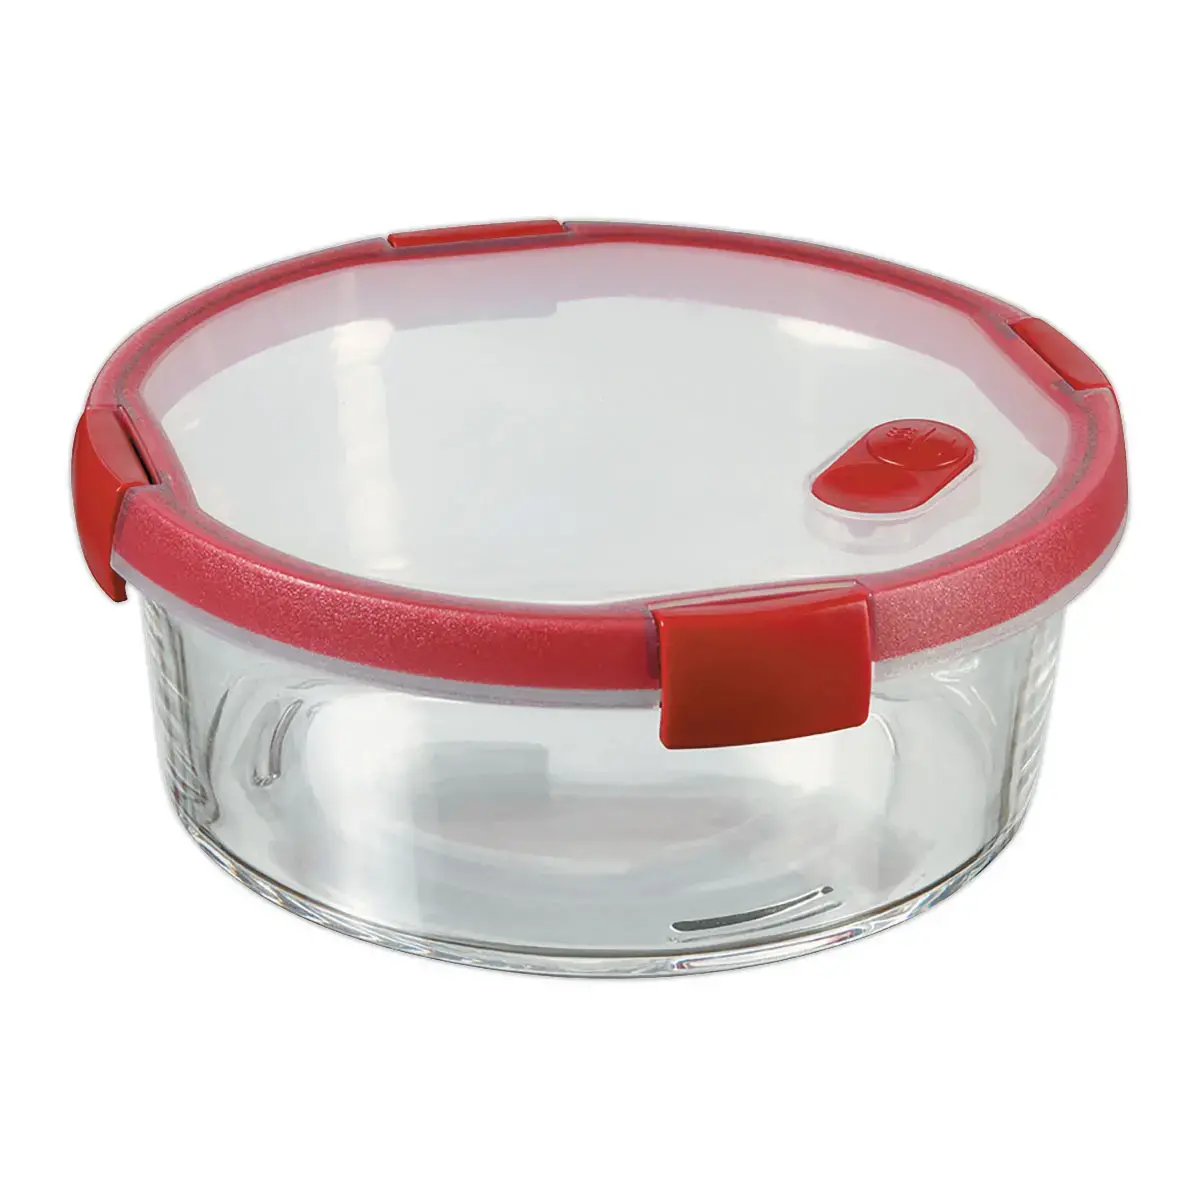 Boite alimentaire en verre ronde 1,2L CURVER rouge - Assiettes